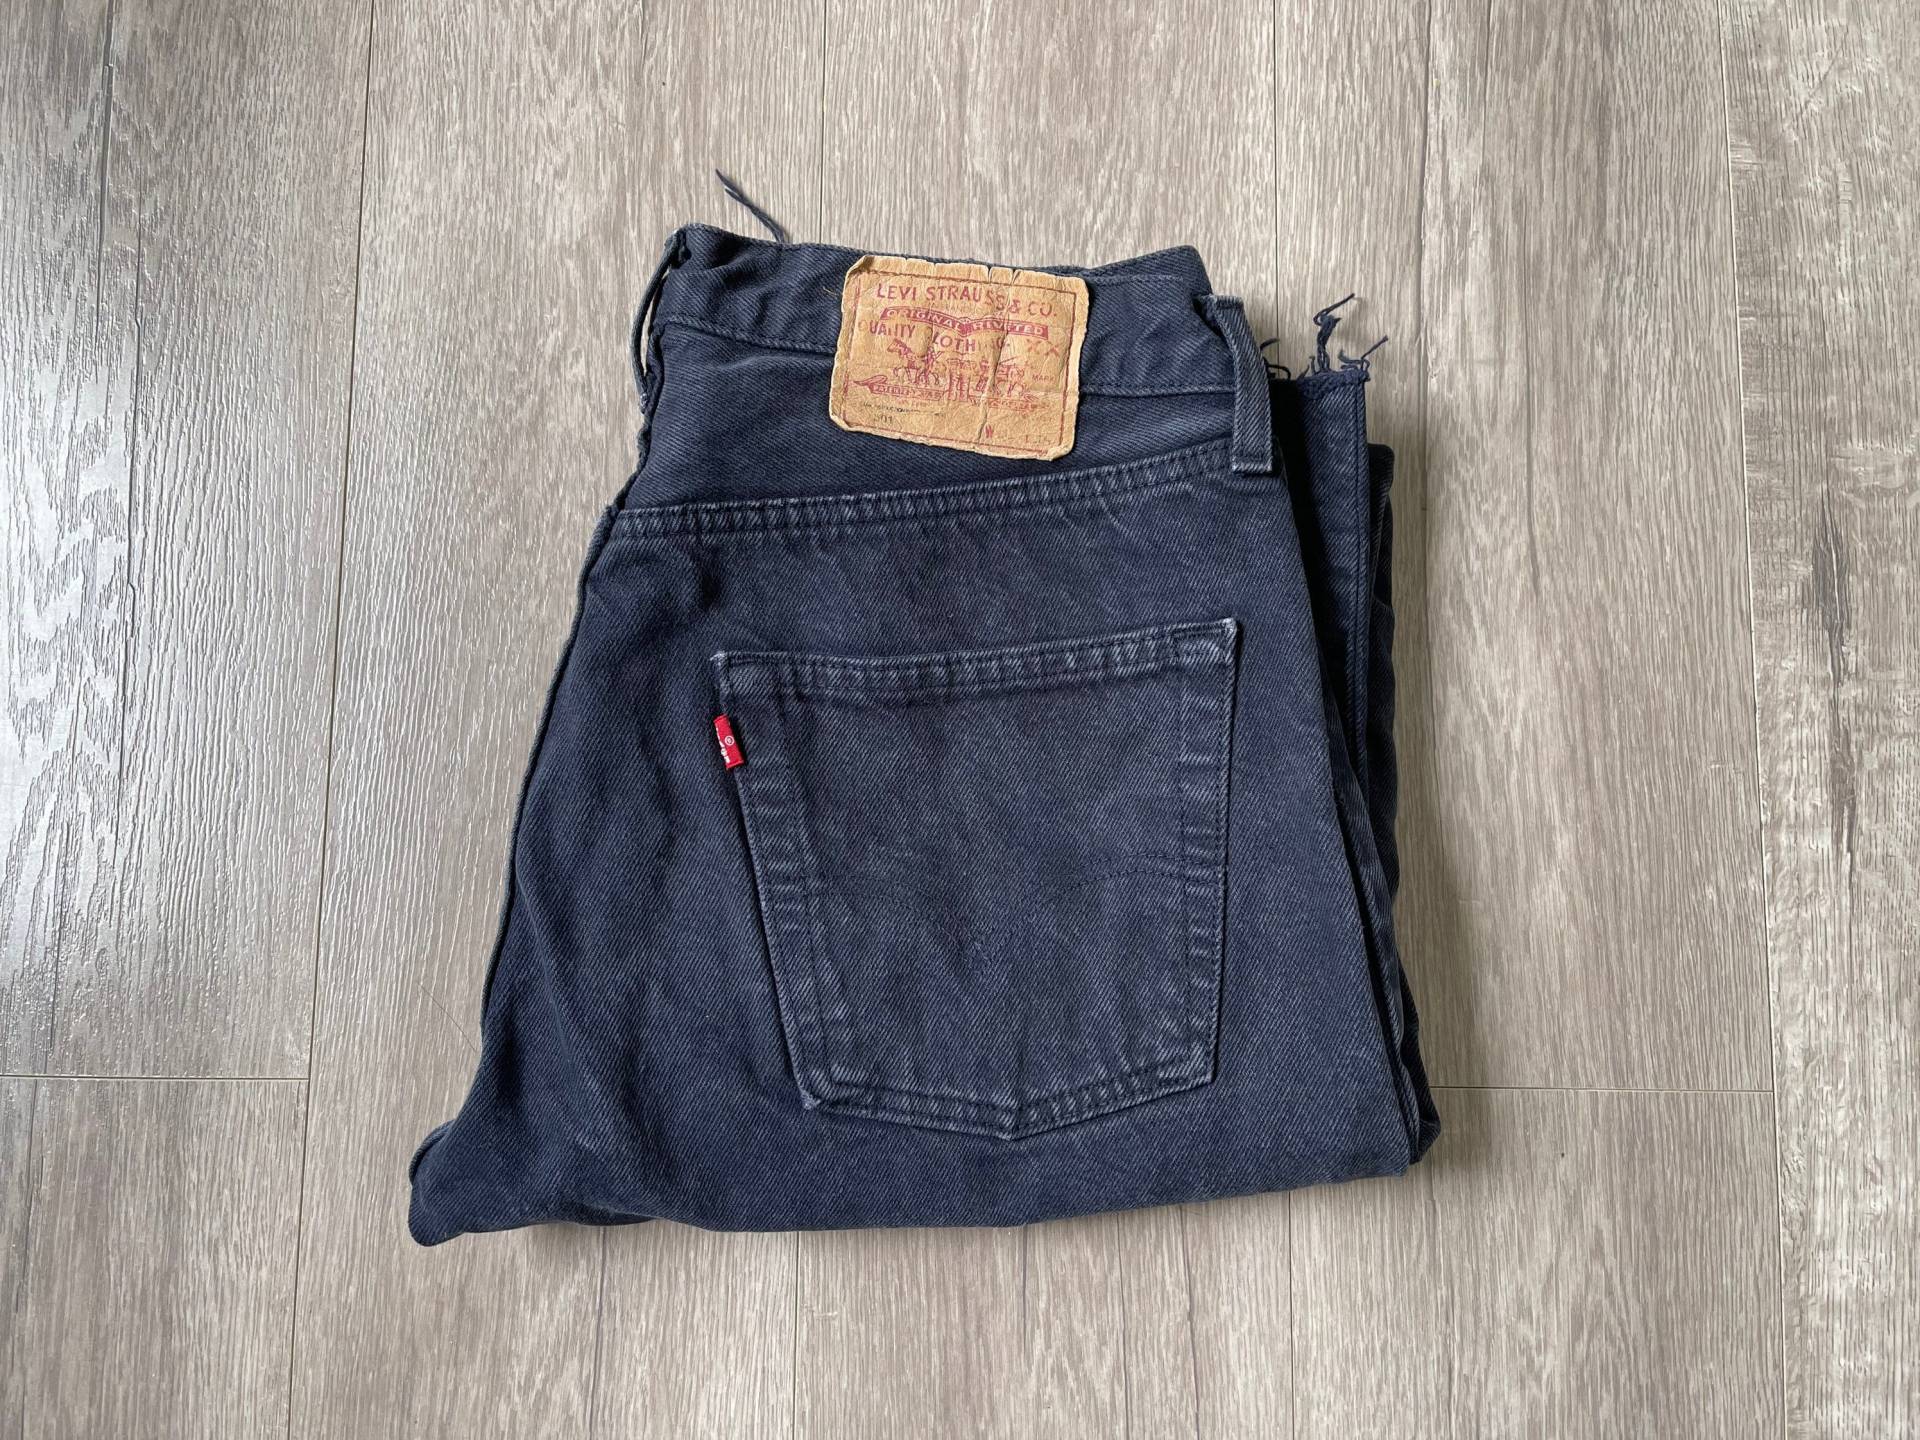 Vintage 501 Levi's Jeans - Dunkelblaue Waschung Abgeschnittene Beine von Ride2Freedom